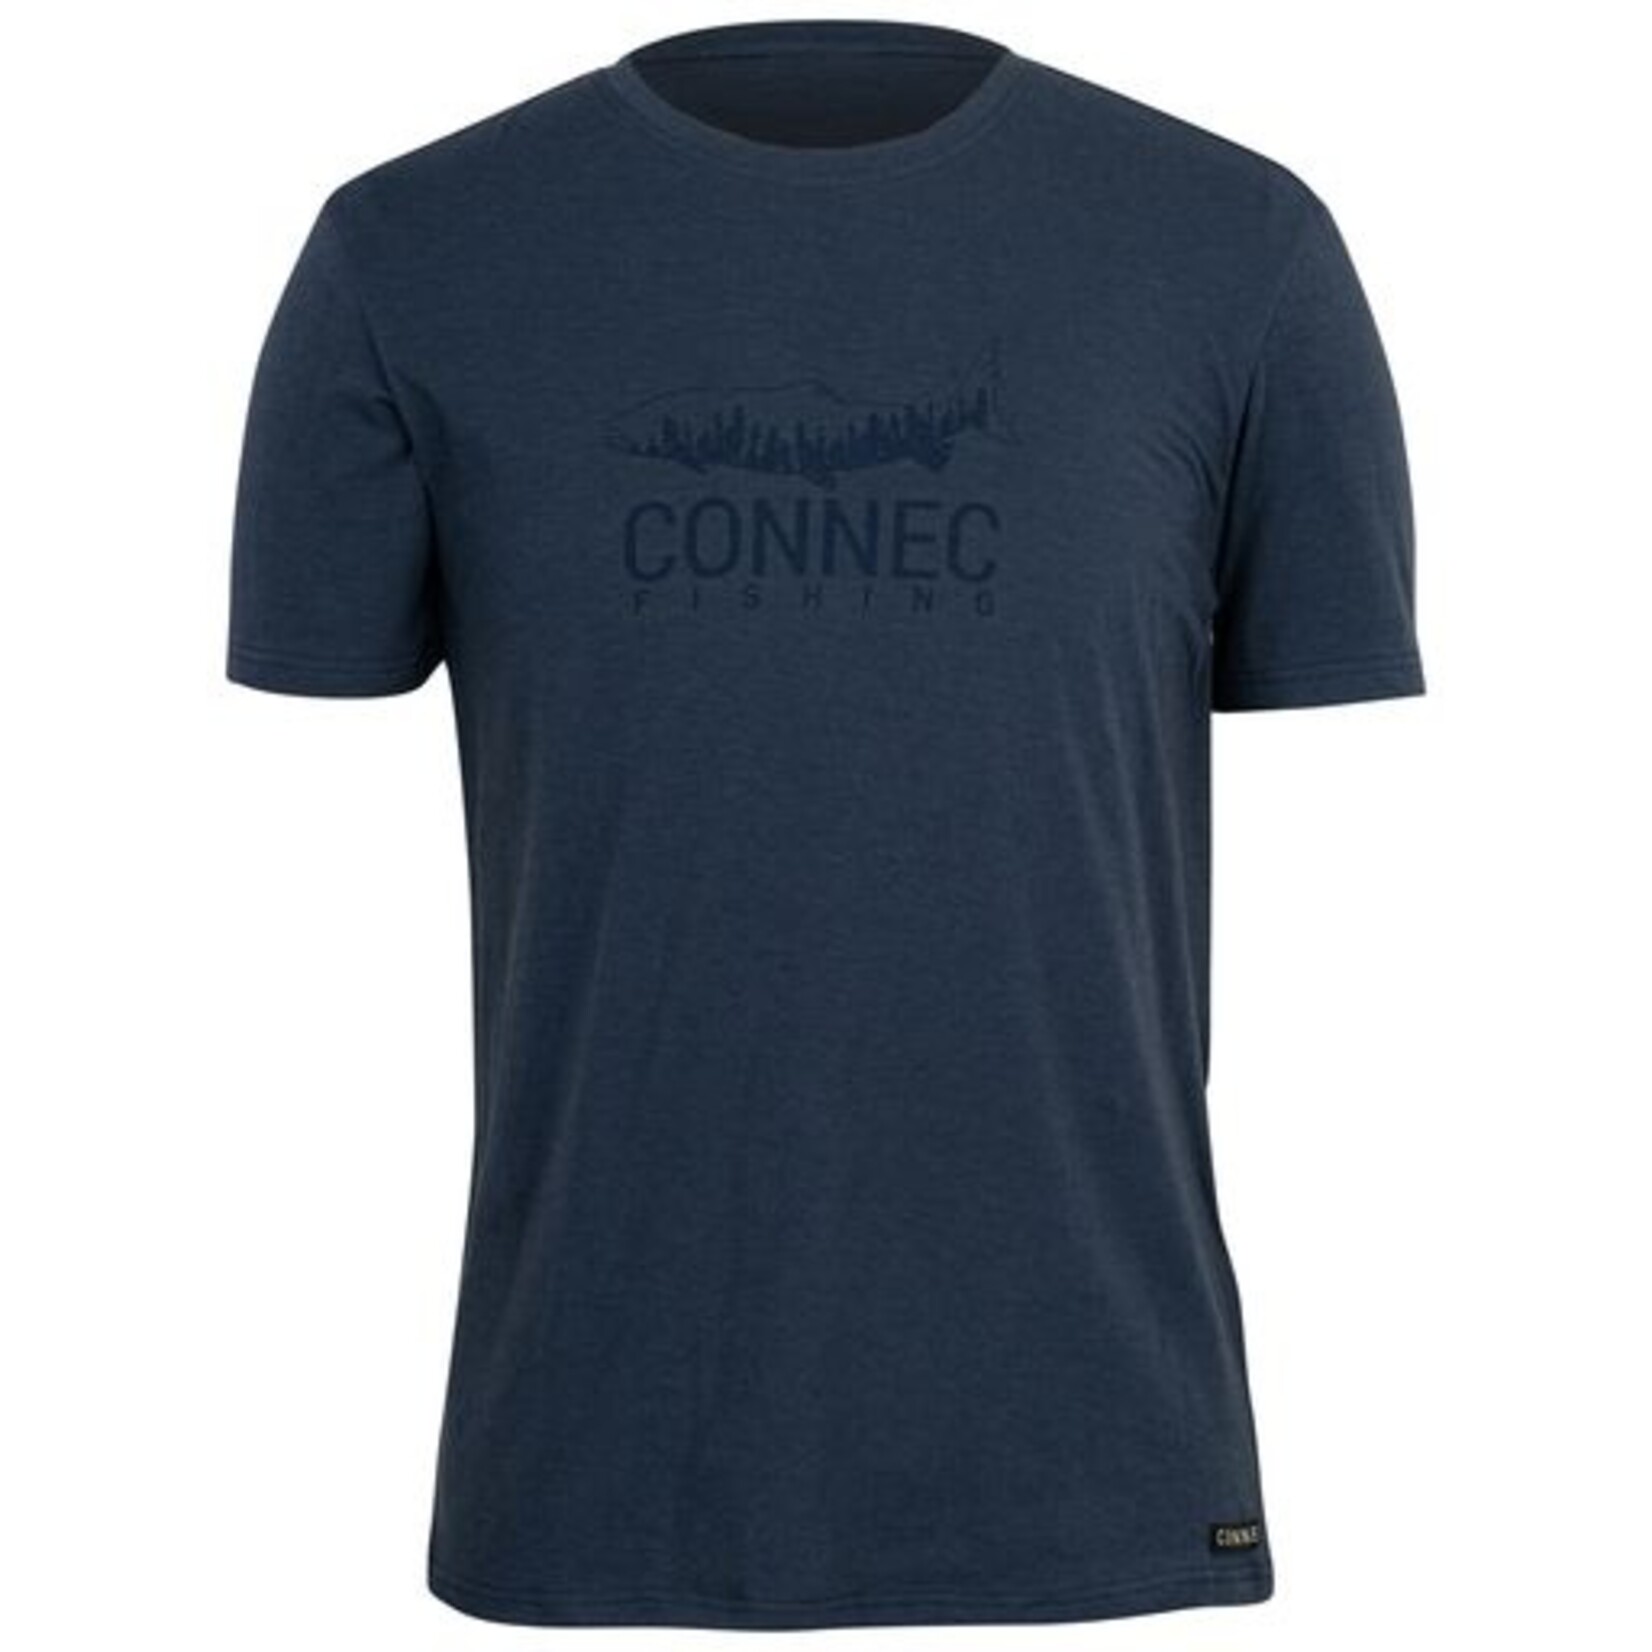 Connec Connec - Trail T Shirt